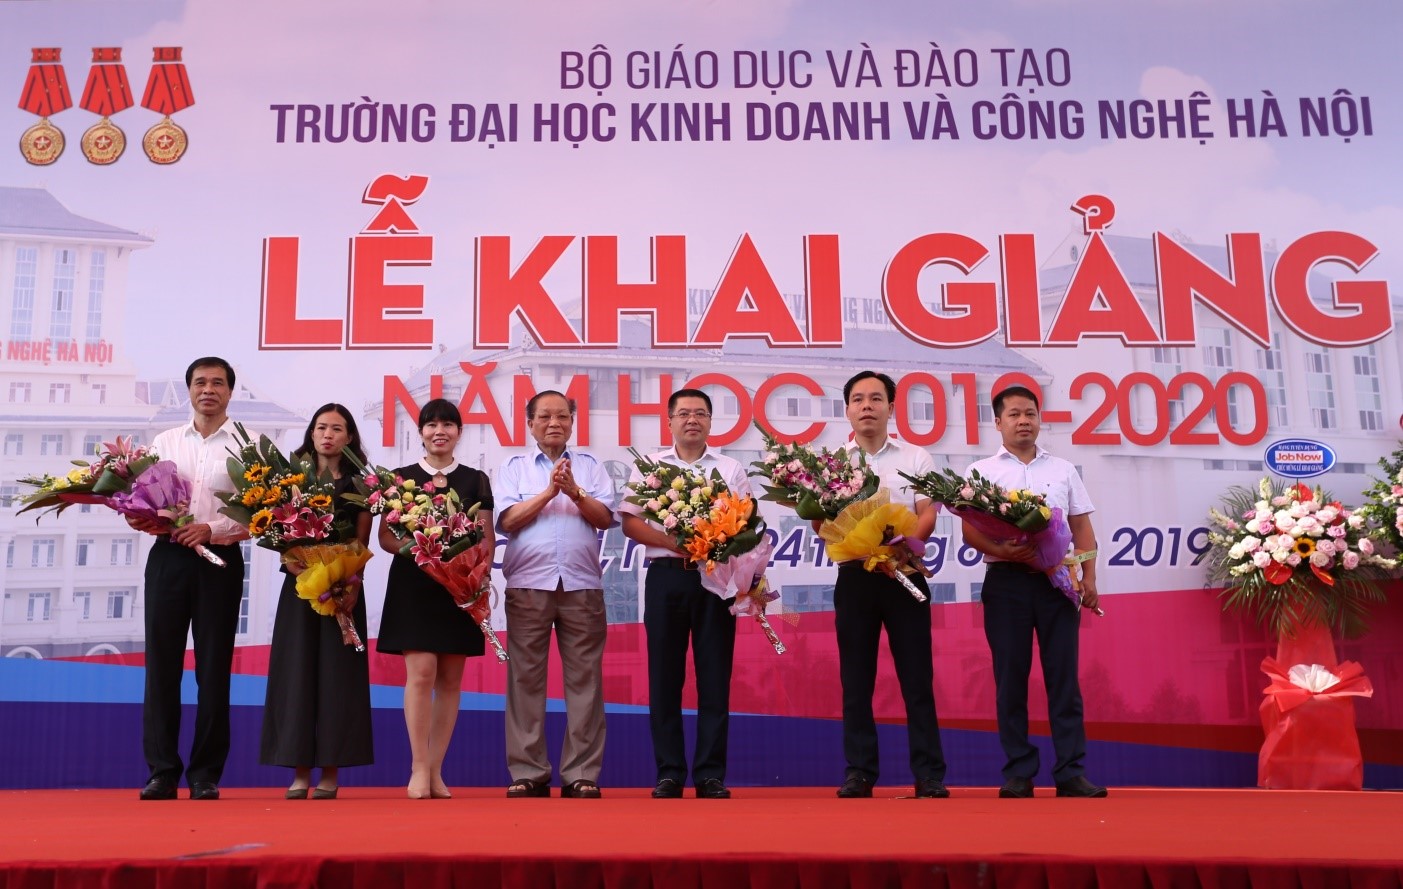 Trường ĐH Kinh doanh và Công nghệ Hà Nội tưng bừng tổ chức Lễ khai giảng chào đón Tân sinh viên khóa 24 (Năm học 2019 - 2020)